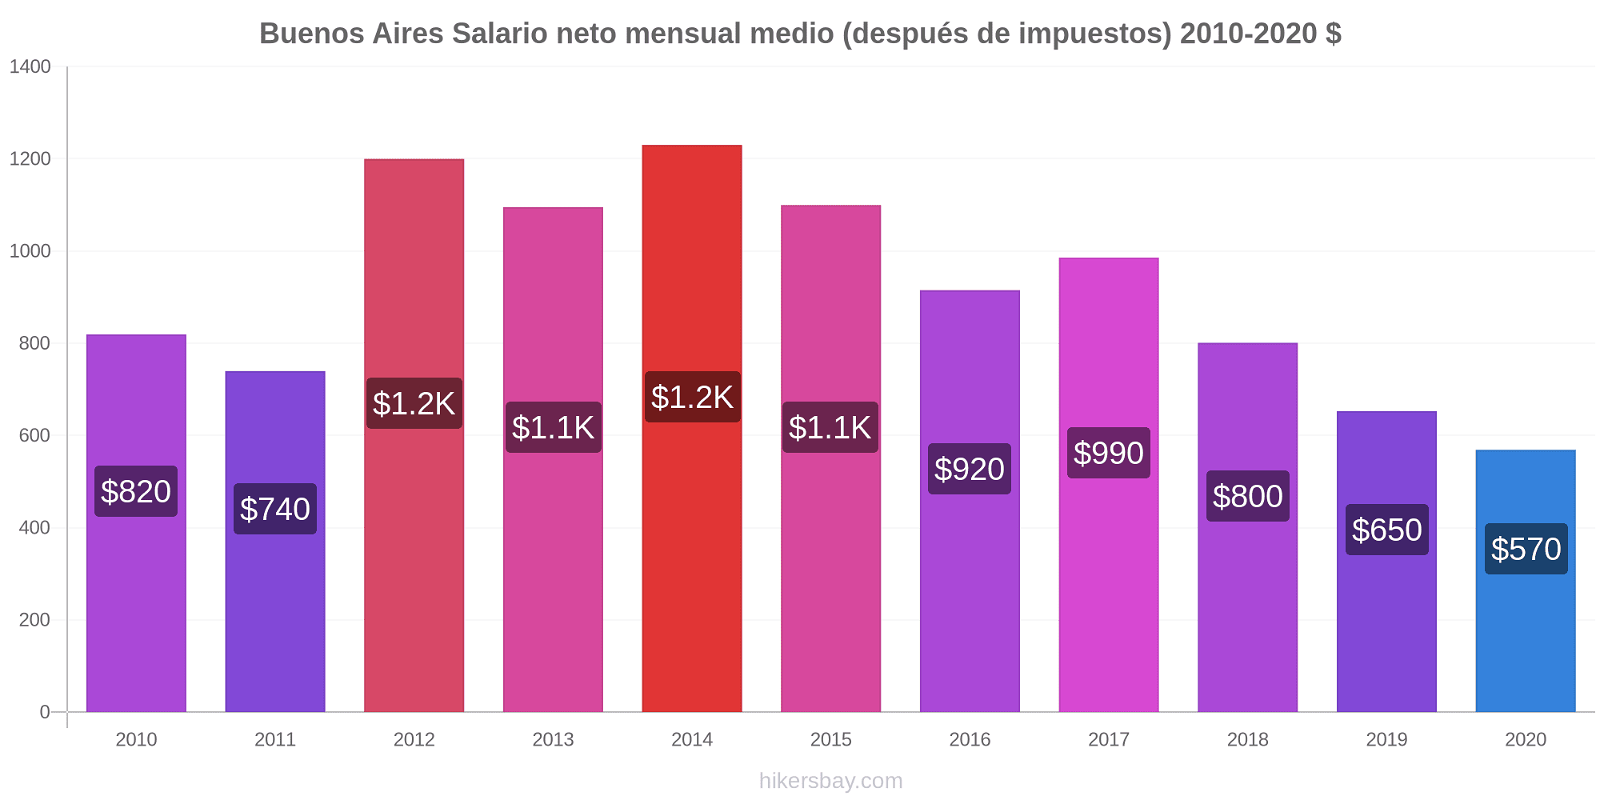 Buenos Aires cambios de precios Promedio mensual del salario neto (después de pagar impuestos) hikersbay.com